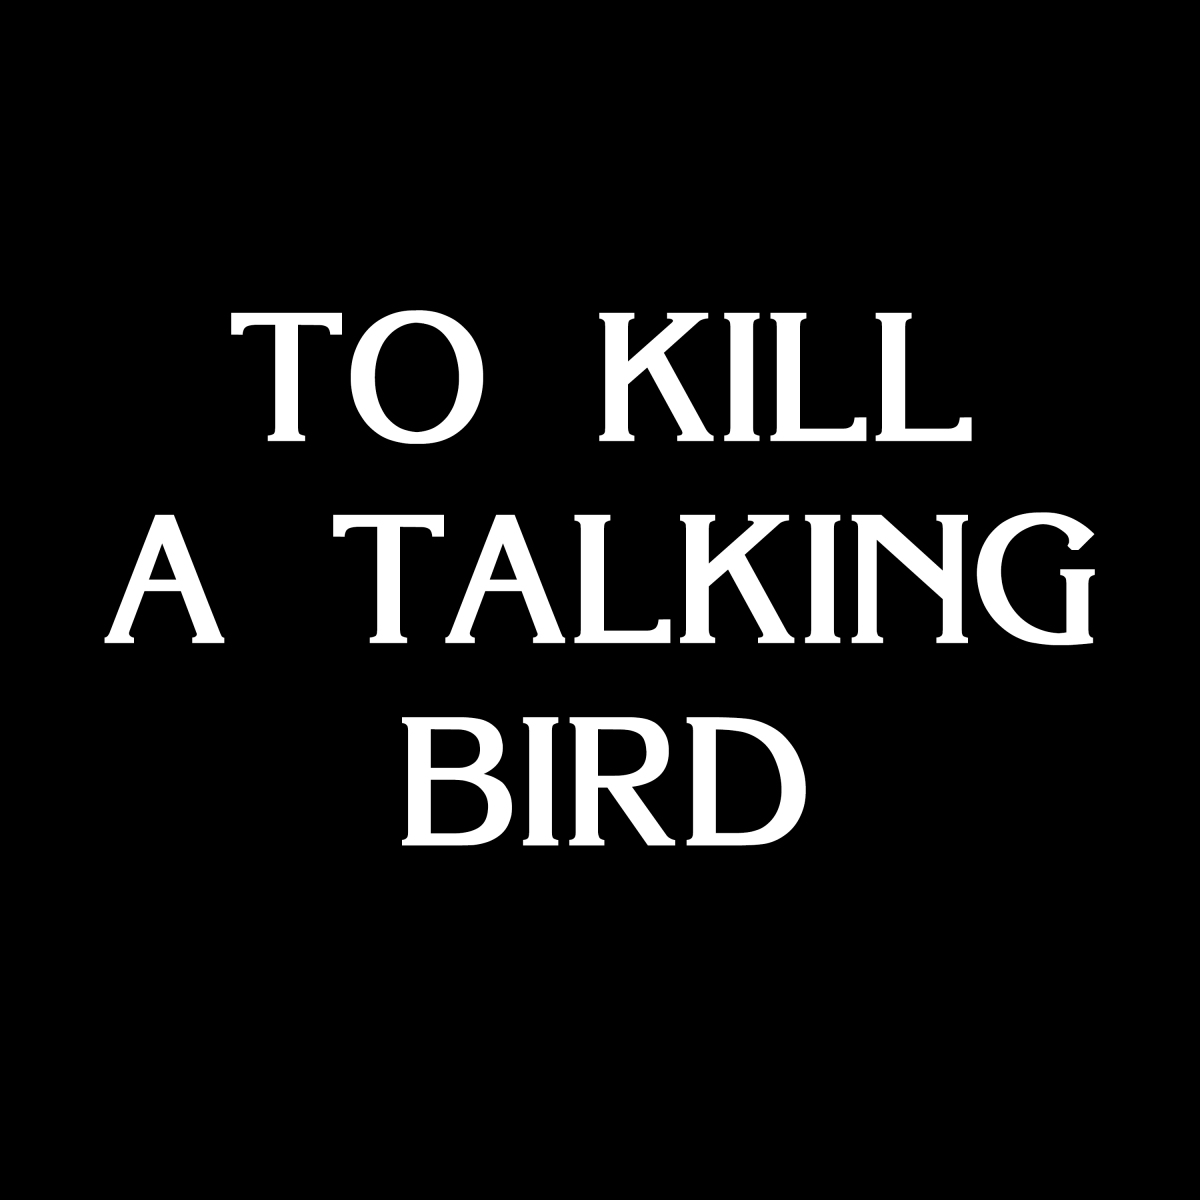 To Kill A Talking Bird